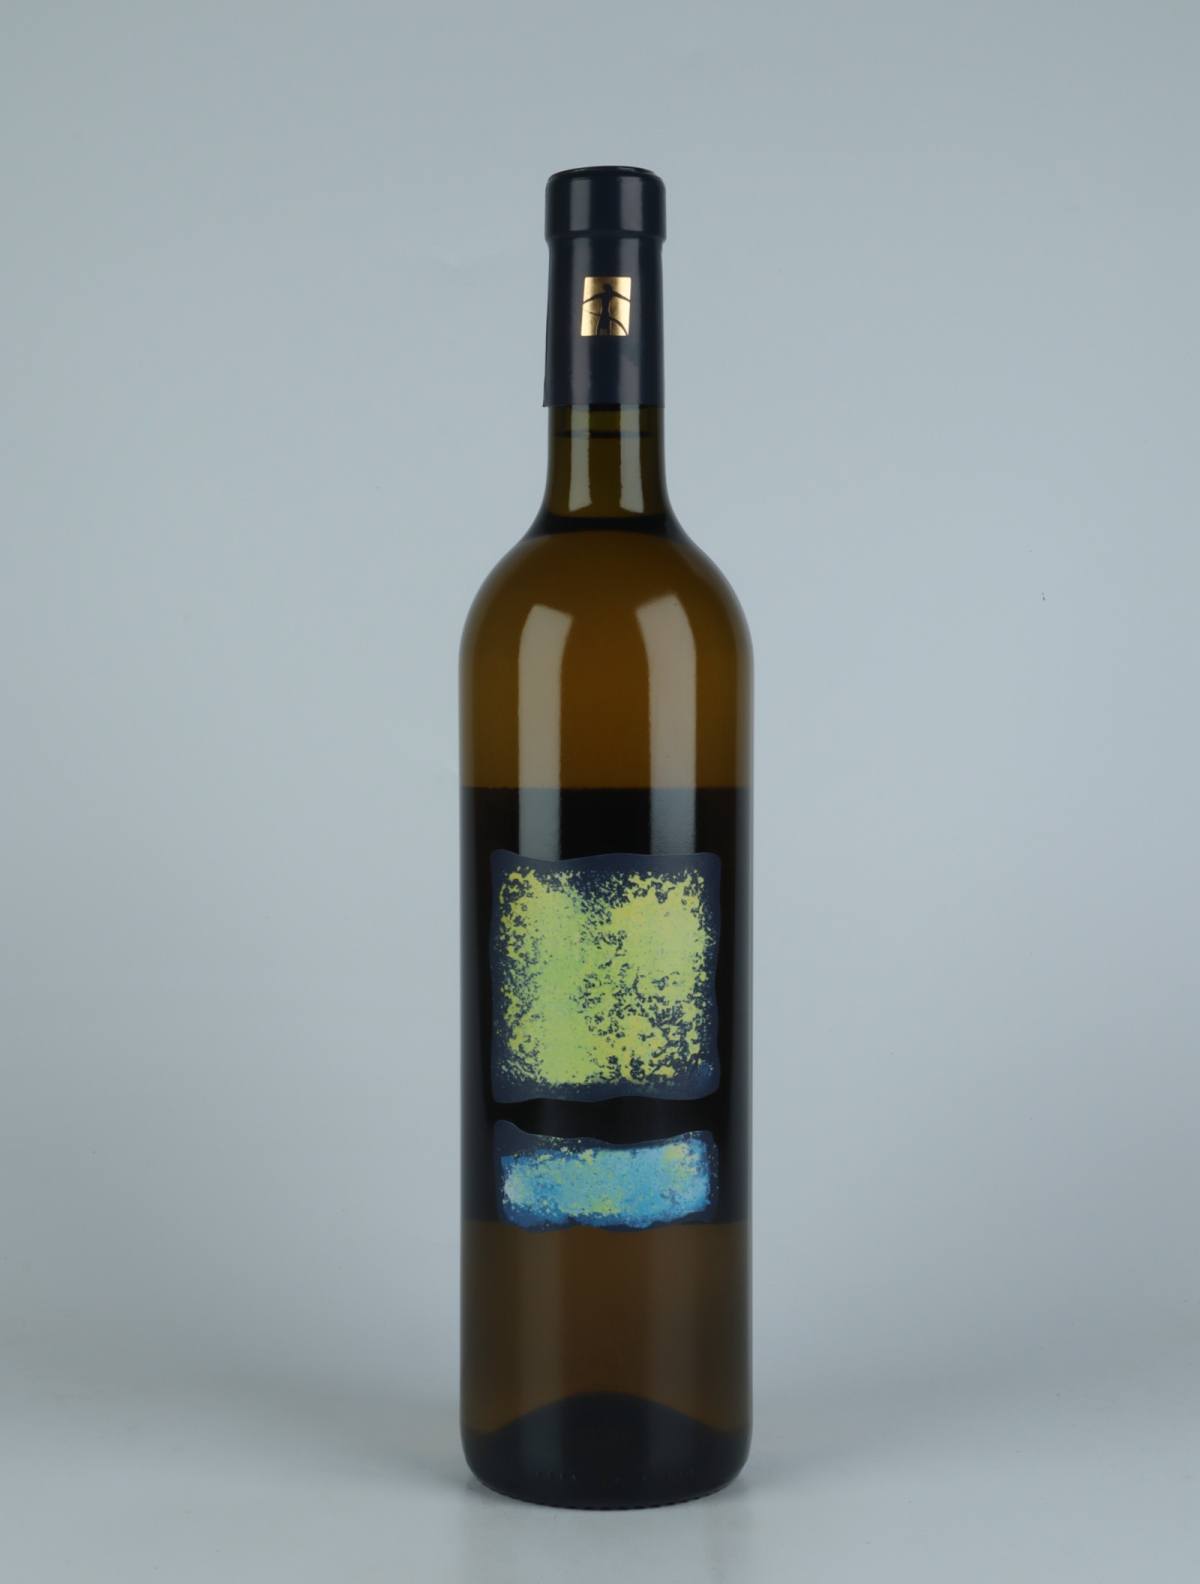 En flaske 2020 VB1 Orange vin fra Tenuta Selvadolce, Ligurien i Italien